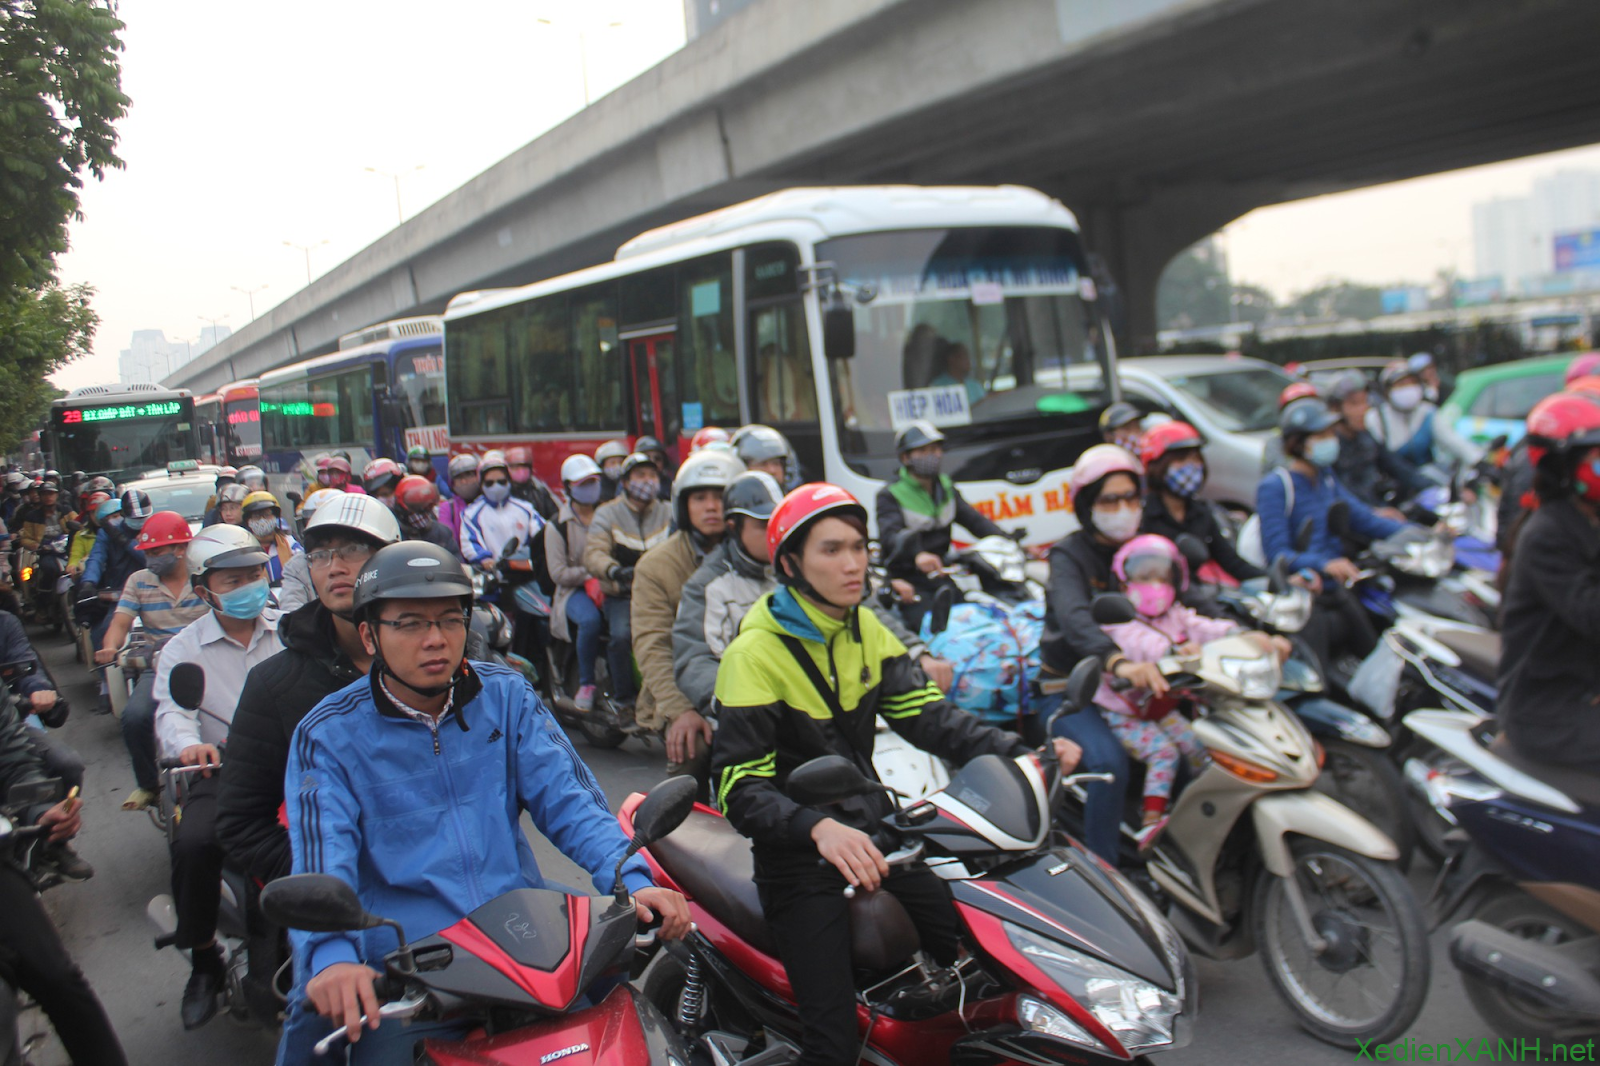 Quy định tốc độ tối đa cho phép với xe máy không quá 60km/h trong khu vực đông dân cư